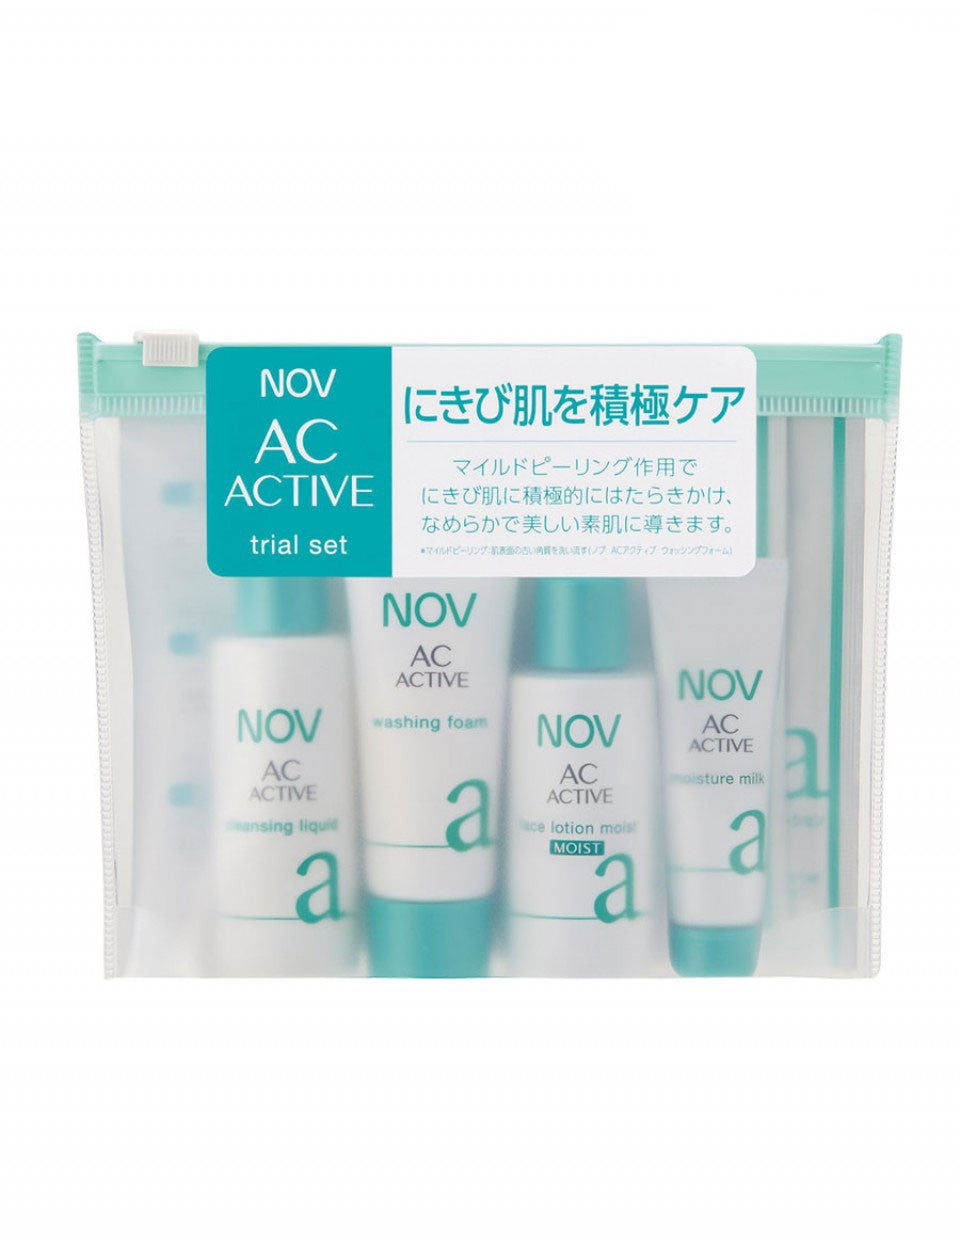 NOV AC active trial set